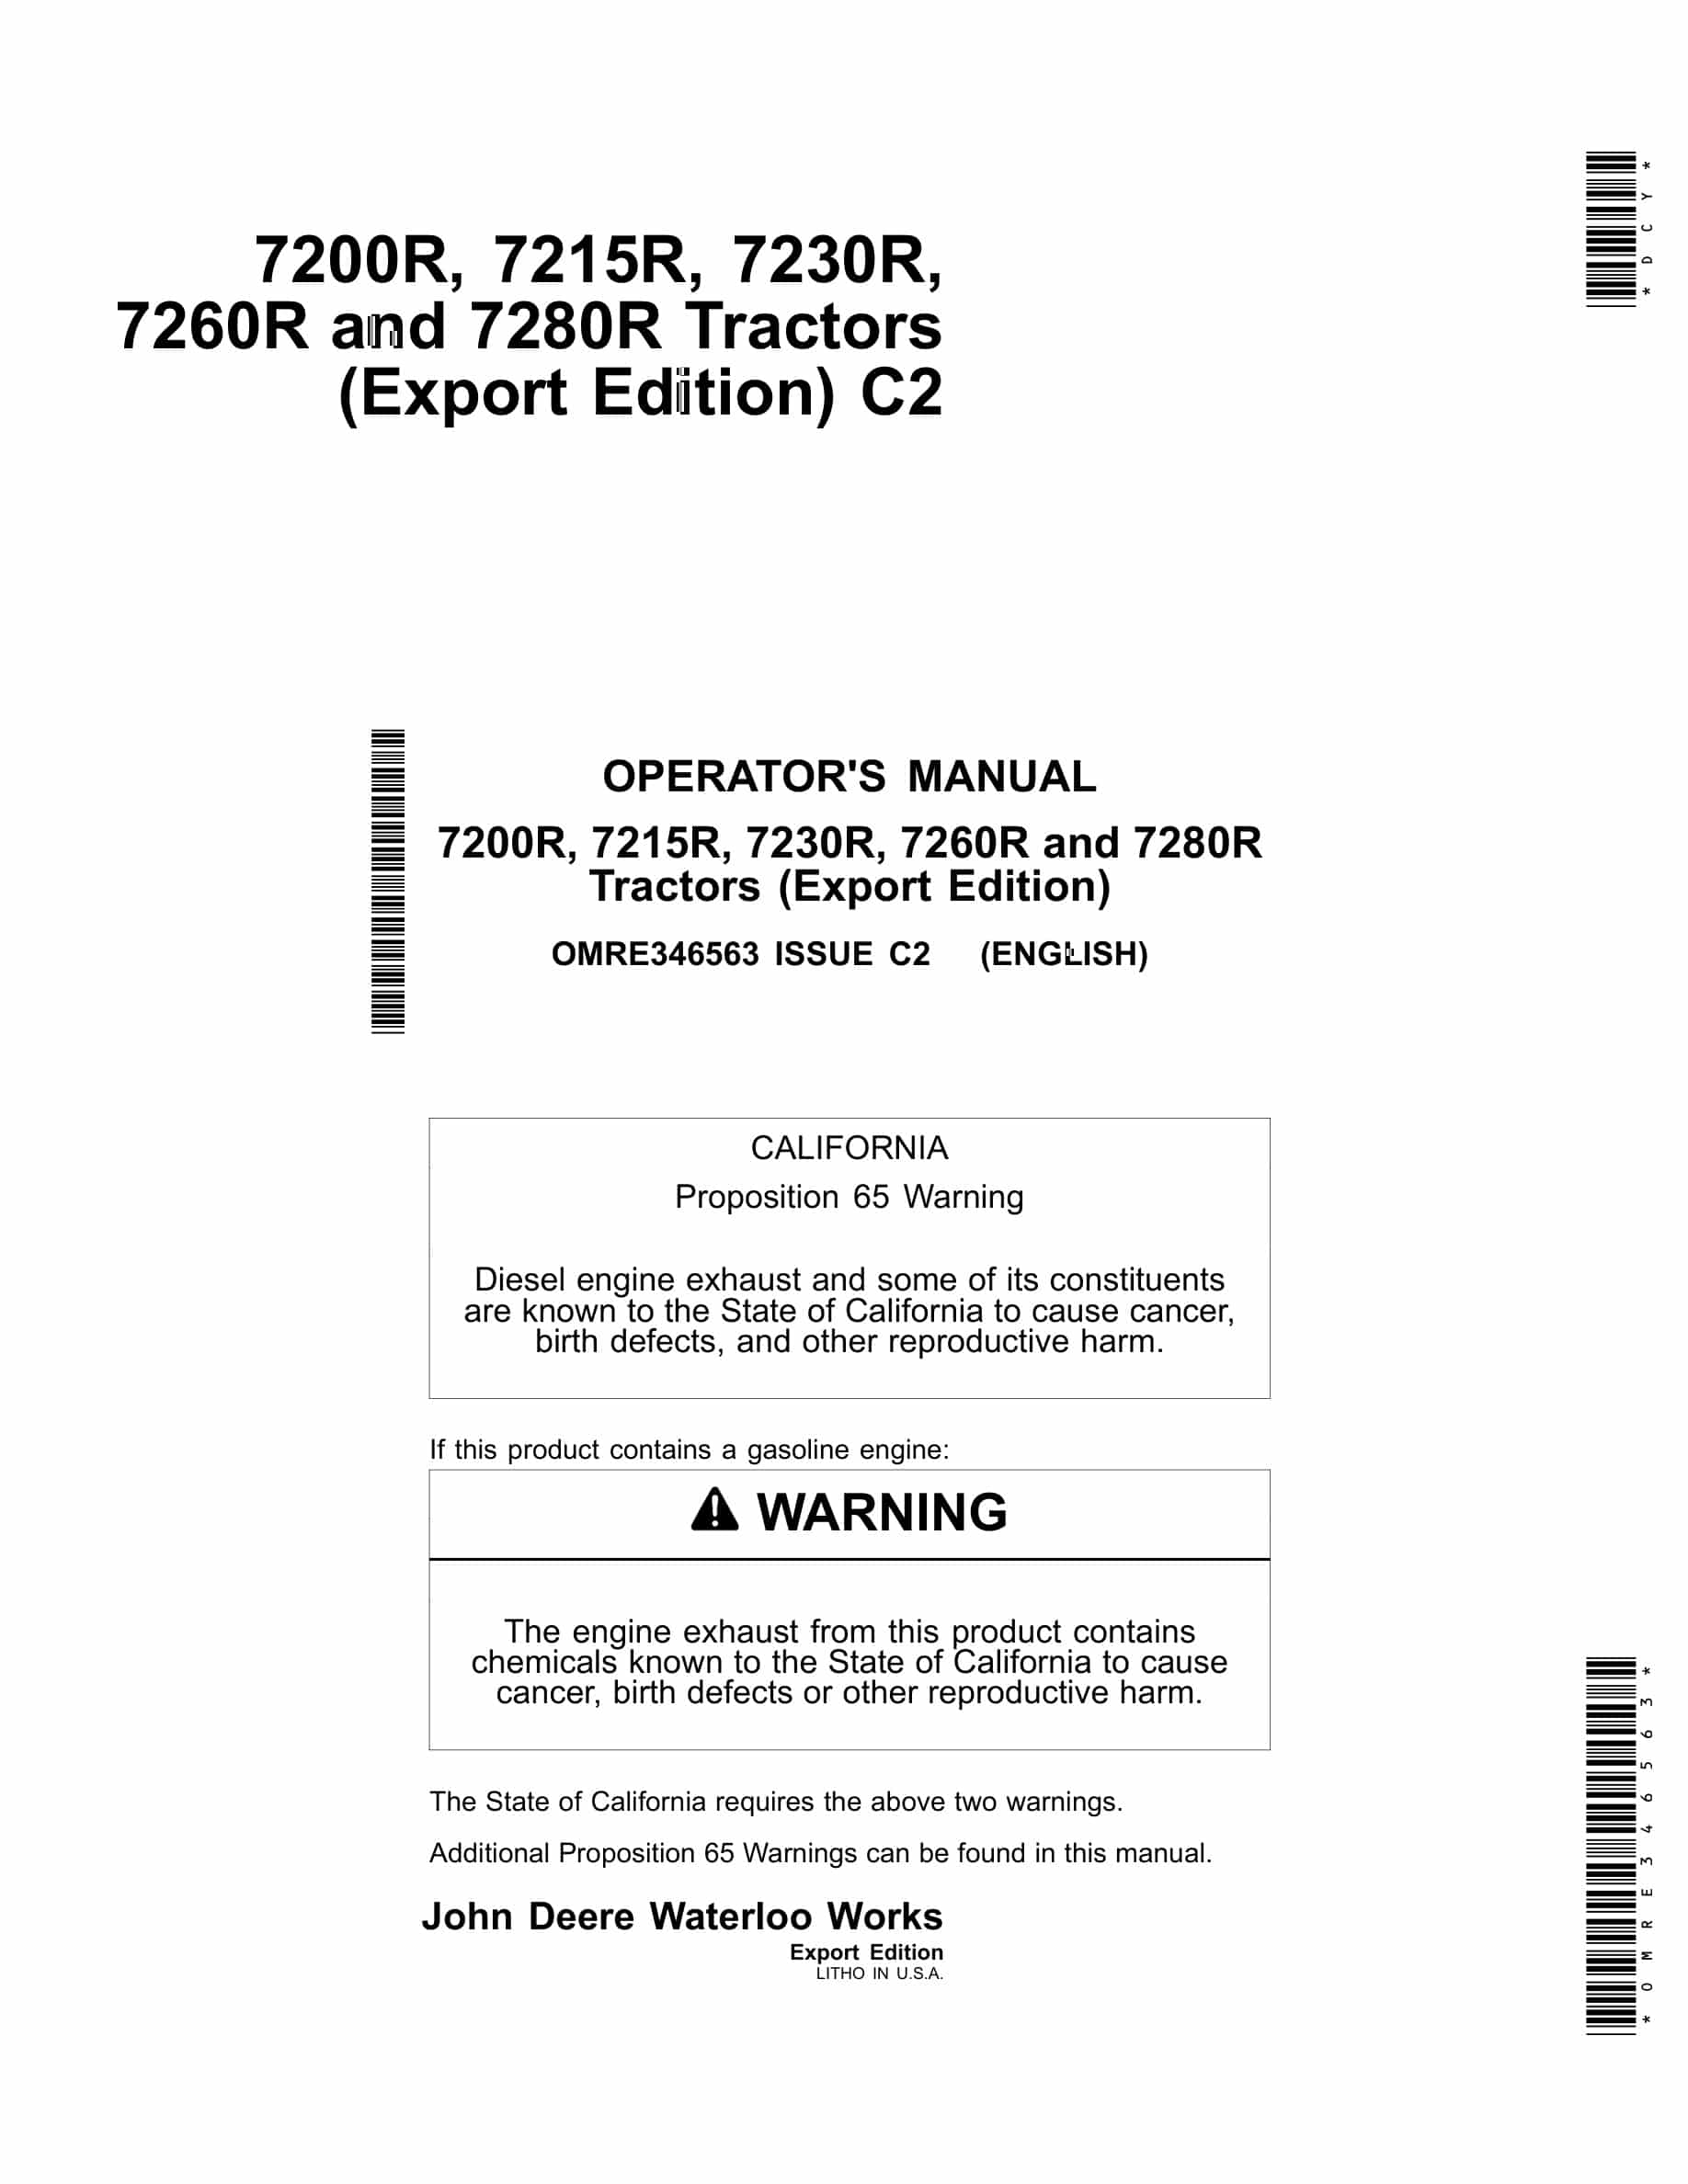 John Deere 7200r, 7215r, 7230r, 7260r And 7280r Tractors Operator Manuals OMRE346563-1